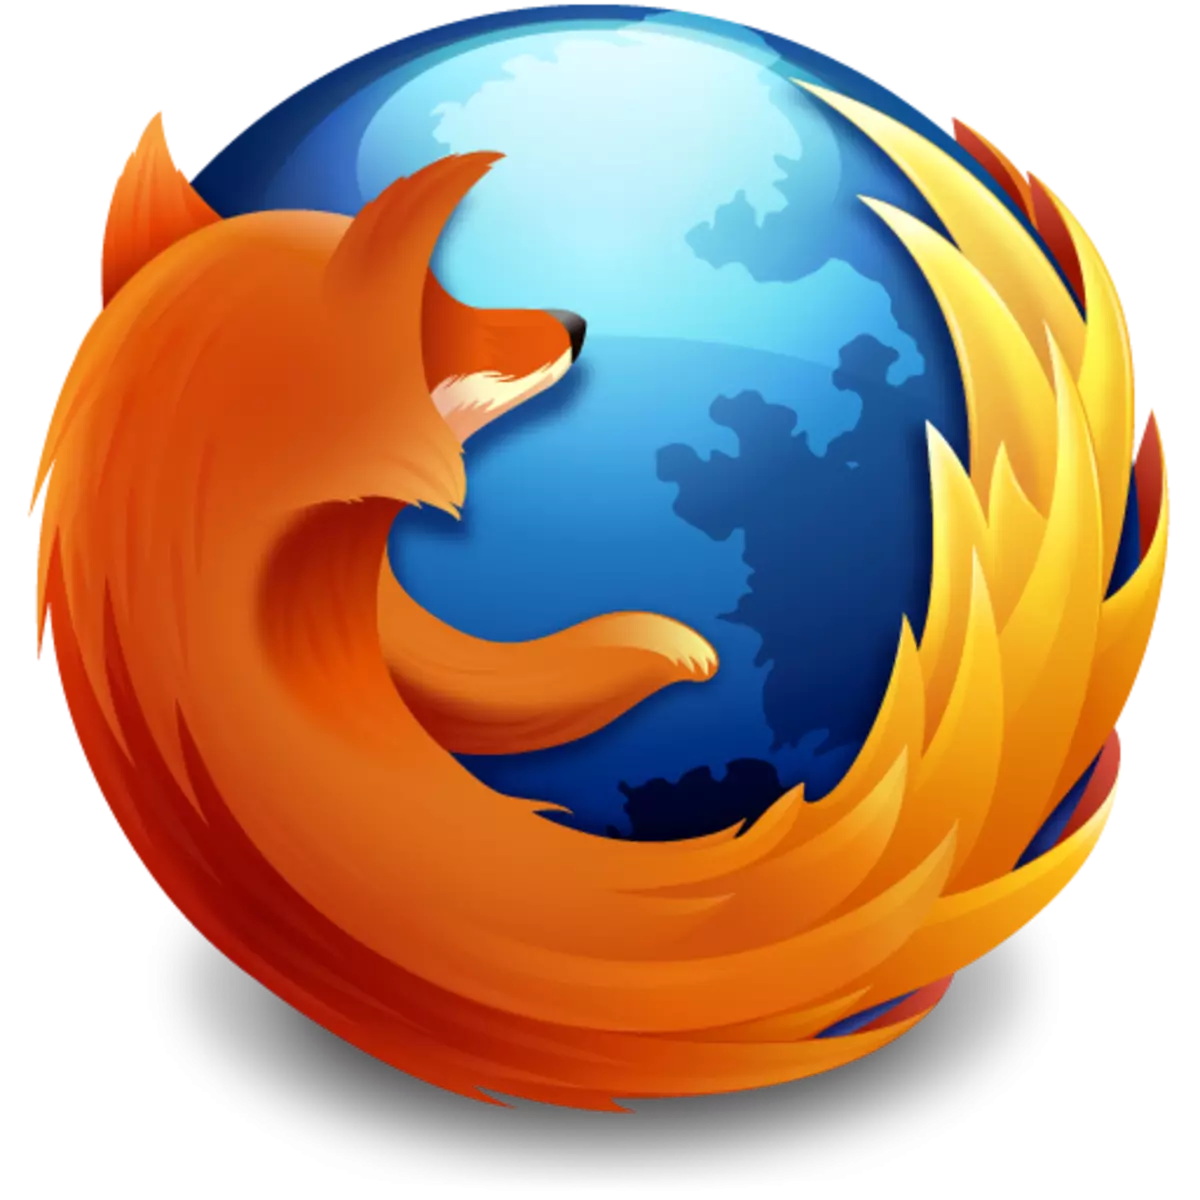 Firefox: Бул мазмунду көрсөтүү үчүн плагин талап кылат